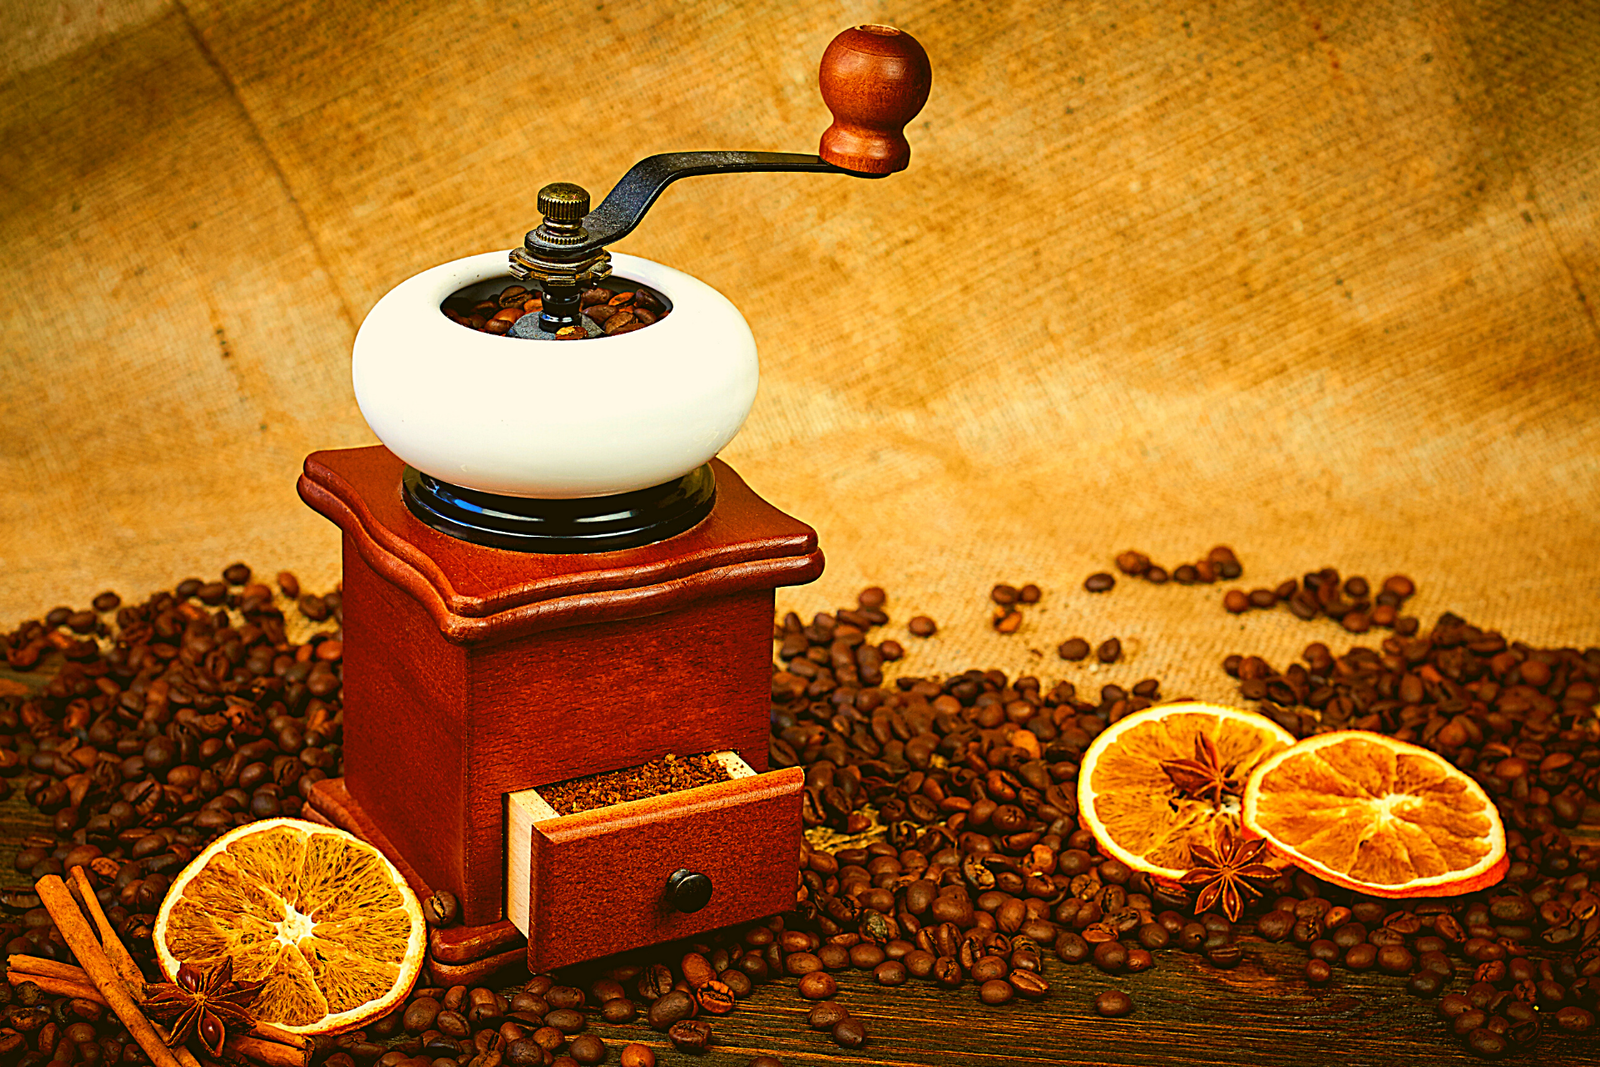 Best Manual Coffee Grinders